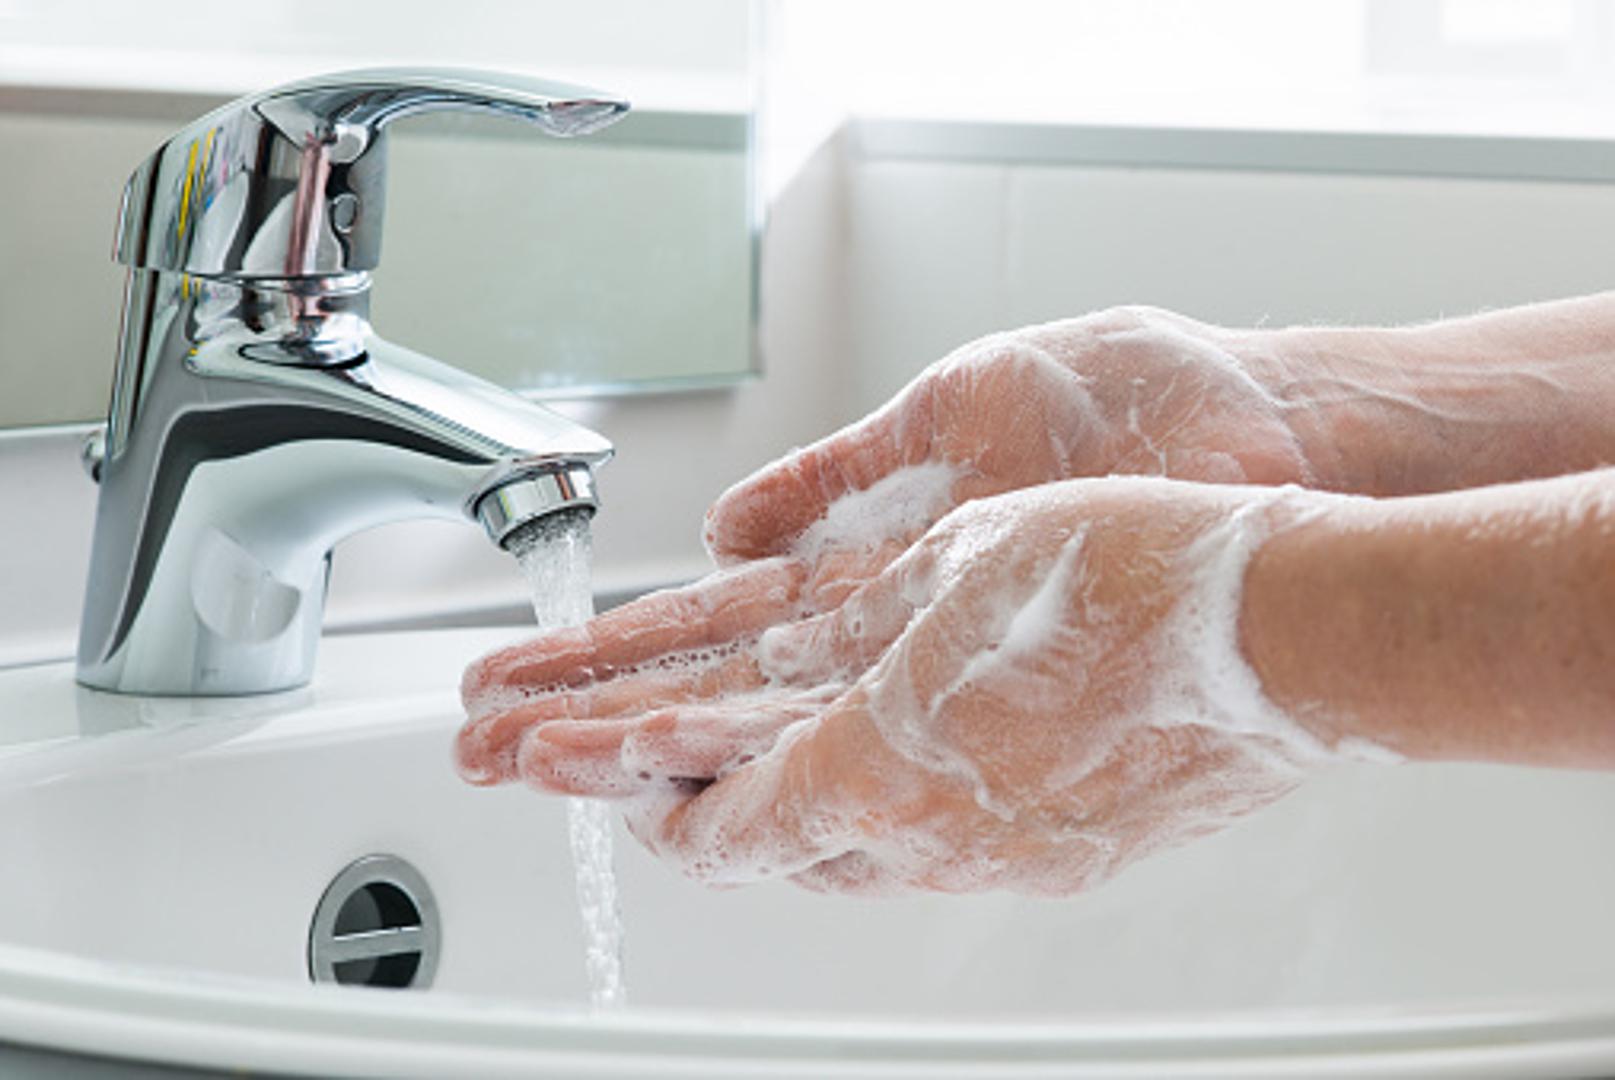 Isto tako, može poslužiti i za uklanjanje neugodnih mirisa s ruku. Na primjer, jak miris luka ili češnjaka nestat će kada na ruke stavite šećer pomiješan sa sapunom. Operite ruke tom smjesom i to je to. 
